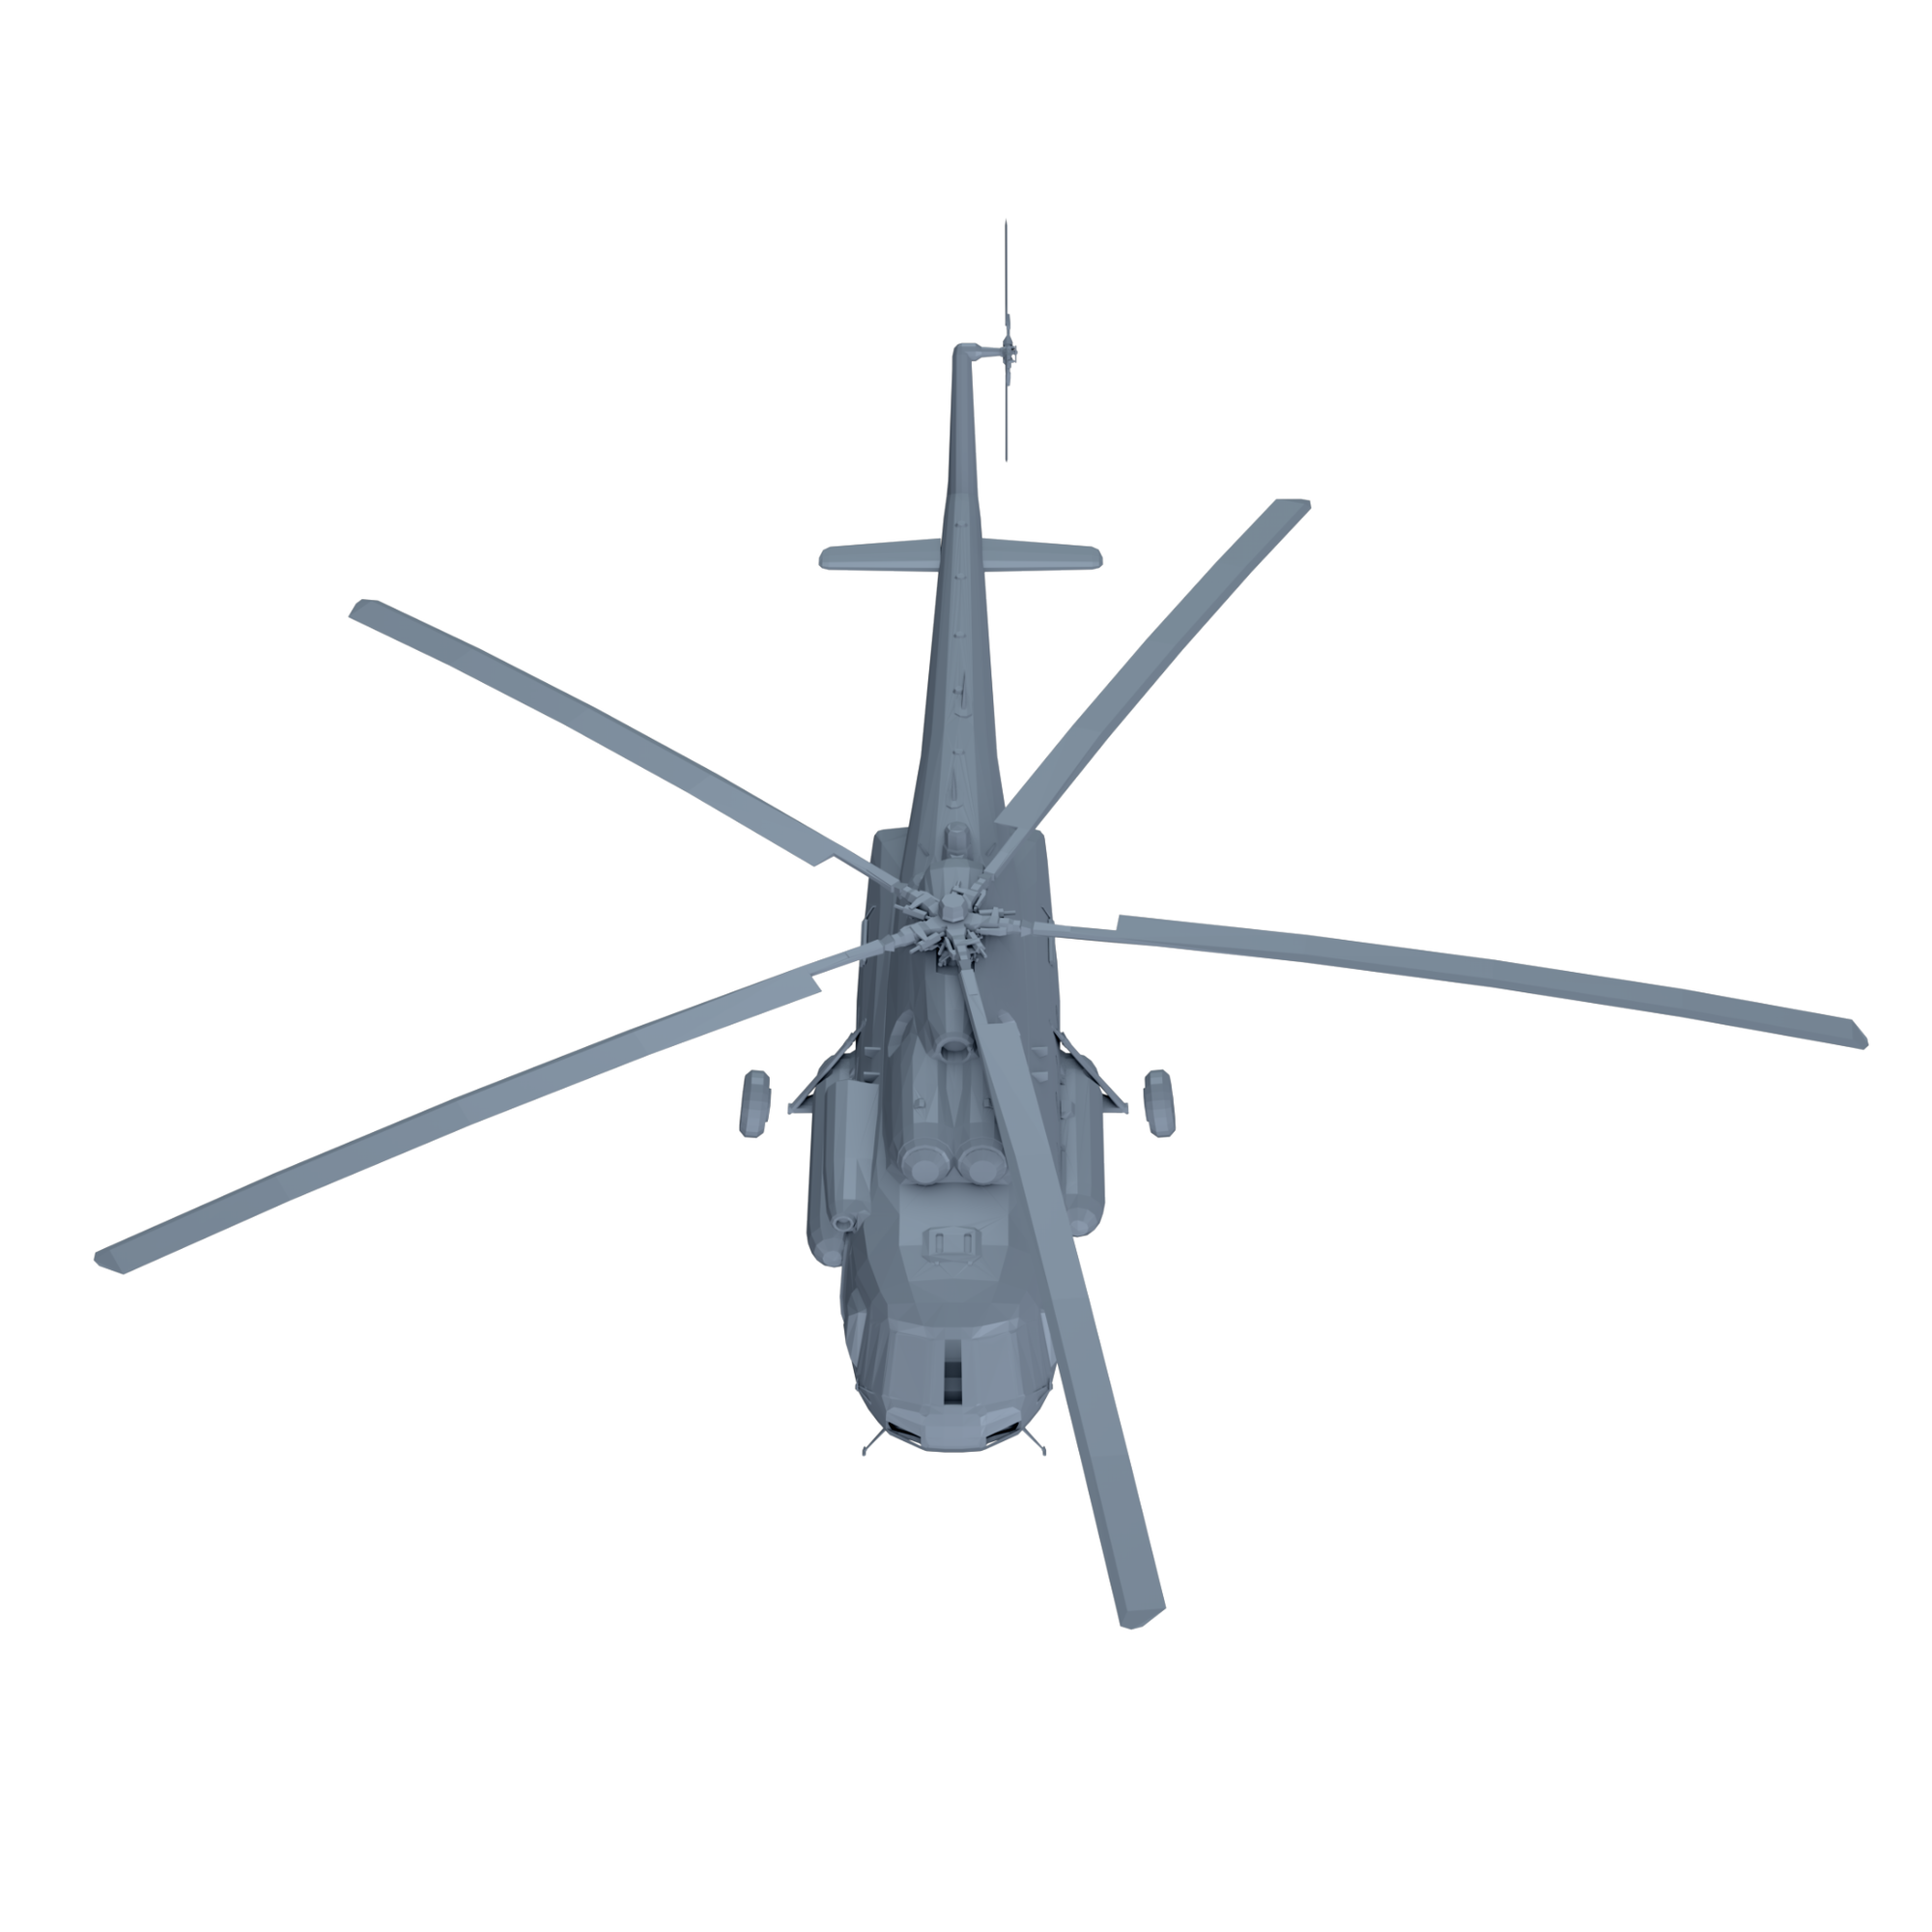 Mil Mi-17